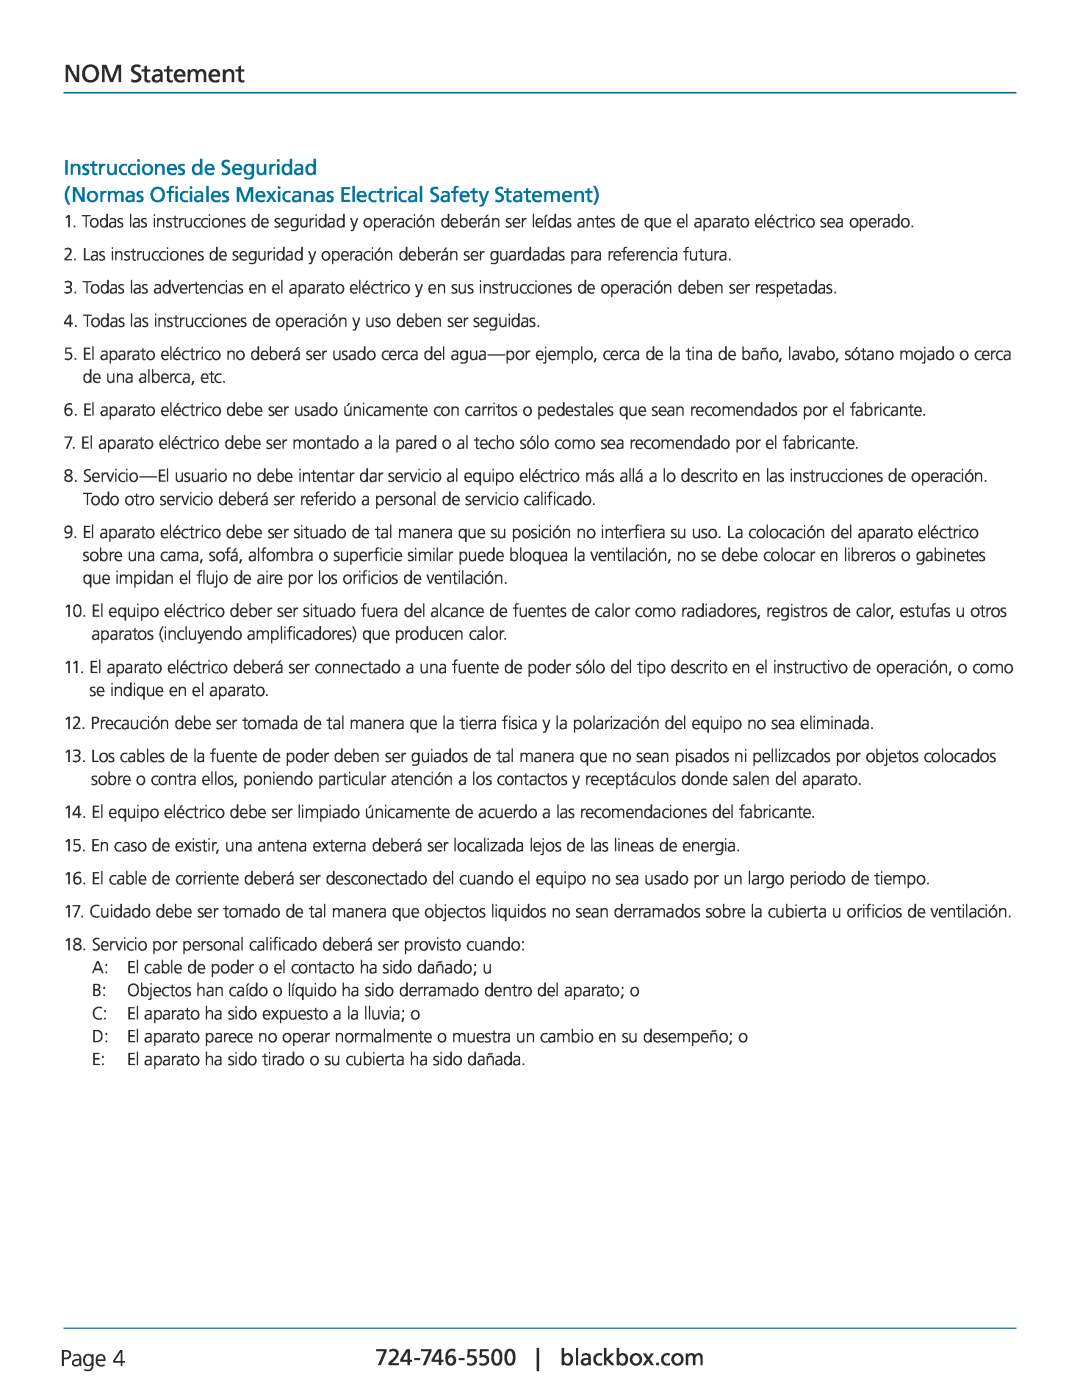 Black Box KV1408A NOM Statement, Instrucciones de Seguridad, Normas Oficiales Mexicanas Electrical Safety Statement, Page 